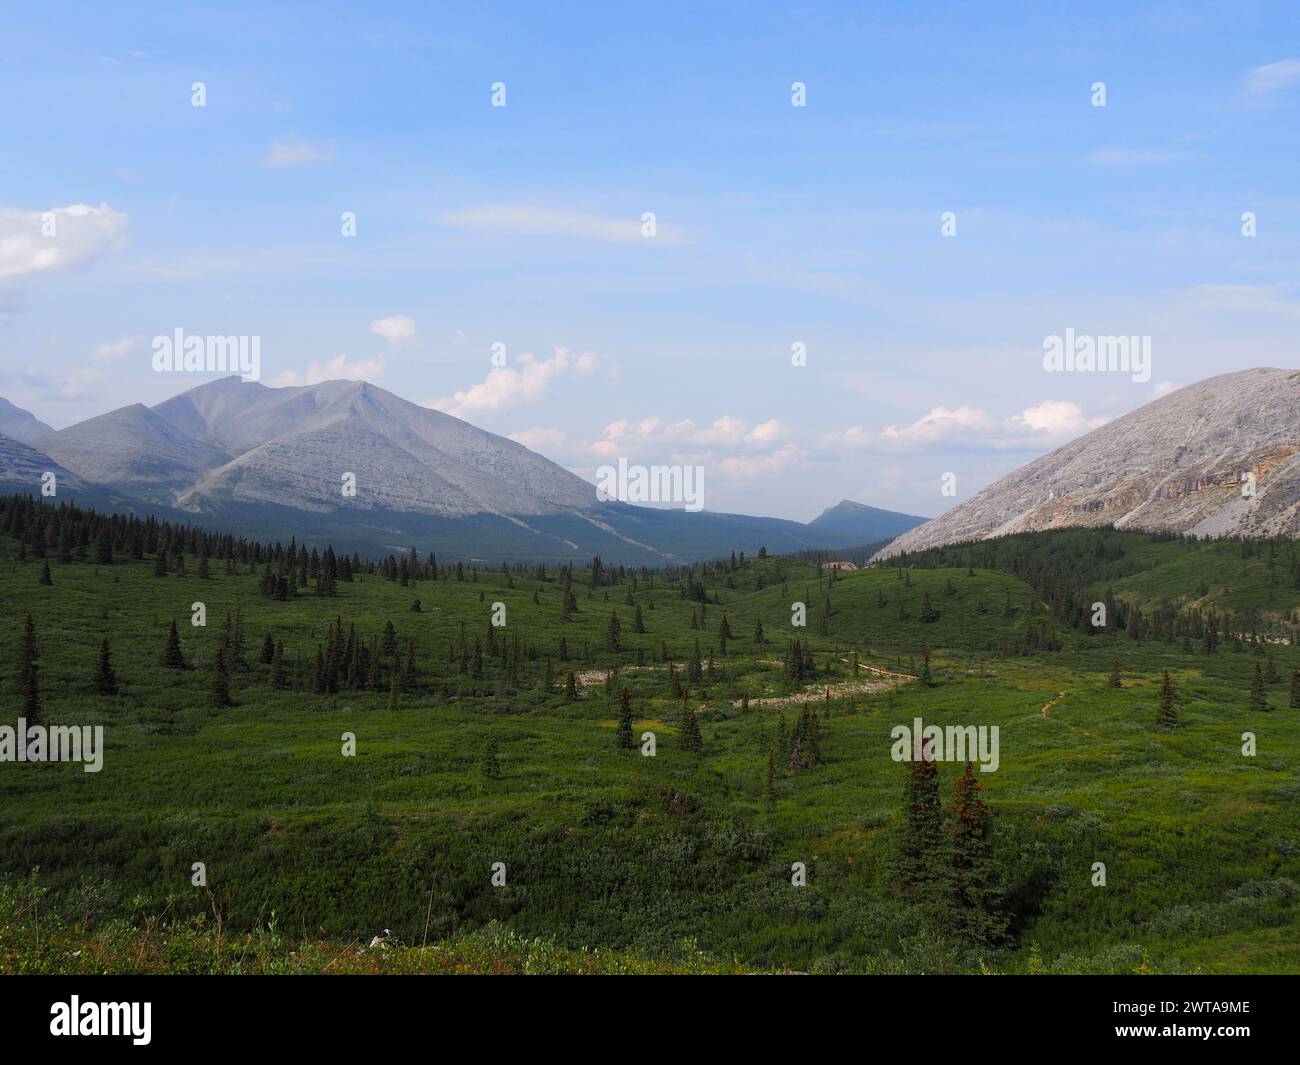 Ein atemberaubender Blick auf die Northern Rocky Mountains in BC, Kanada, mit grünen Wiesen, üppigen Nadelbäumen und hoch aufragenden felsigen Gipfeln Stockfoto